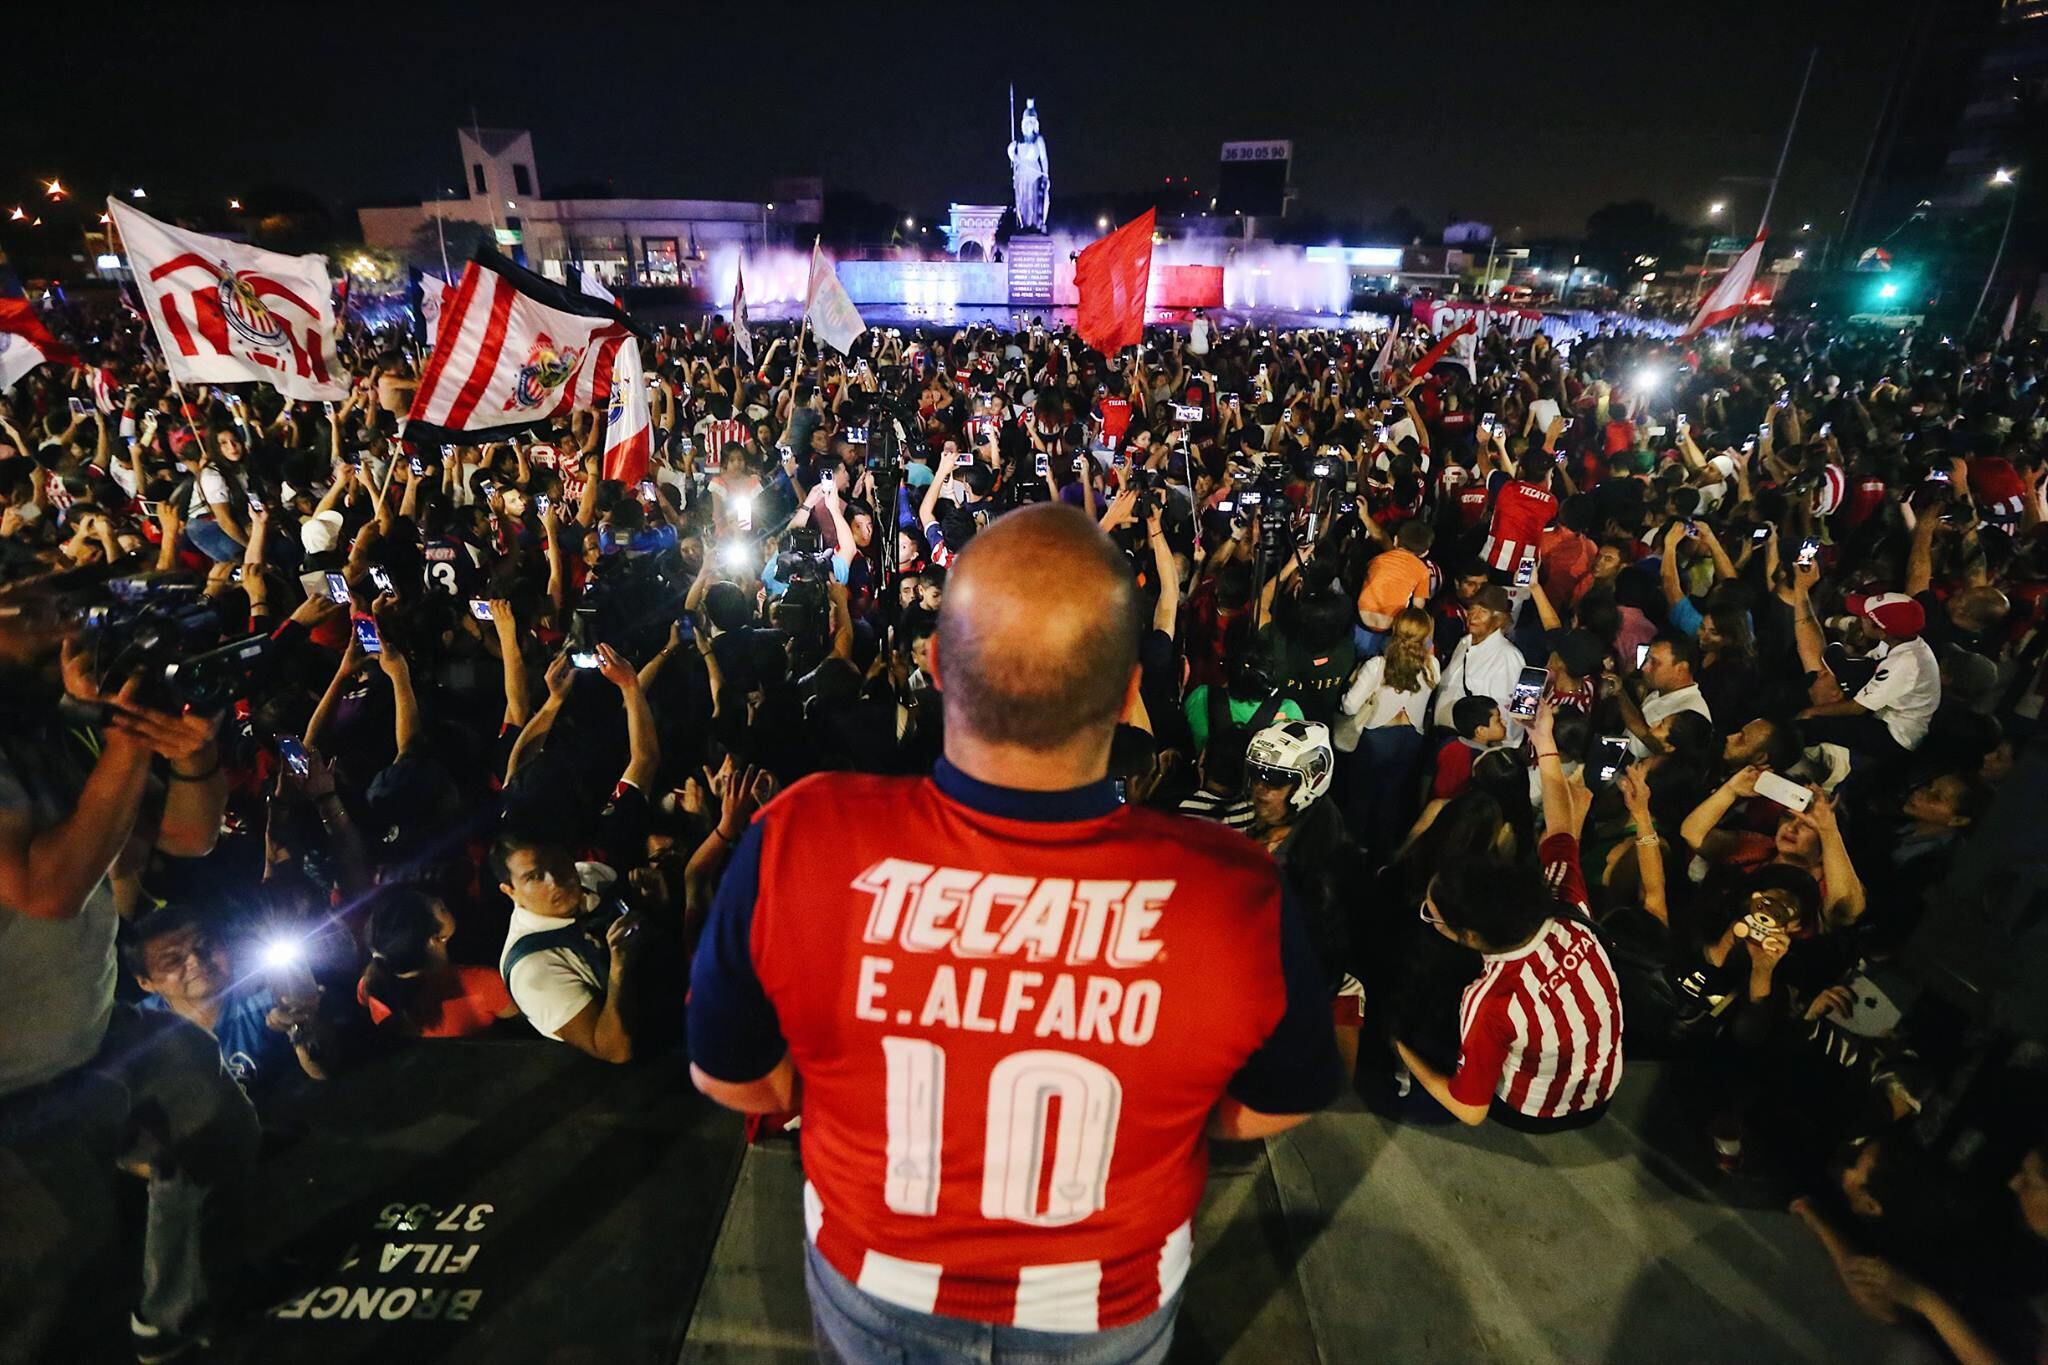 Enrique Alfaro, gobernador y apasionado seguidor del fútbol local, no dudó en expresar su frustración por la decisión arbitral que afectó a Chivas